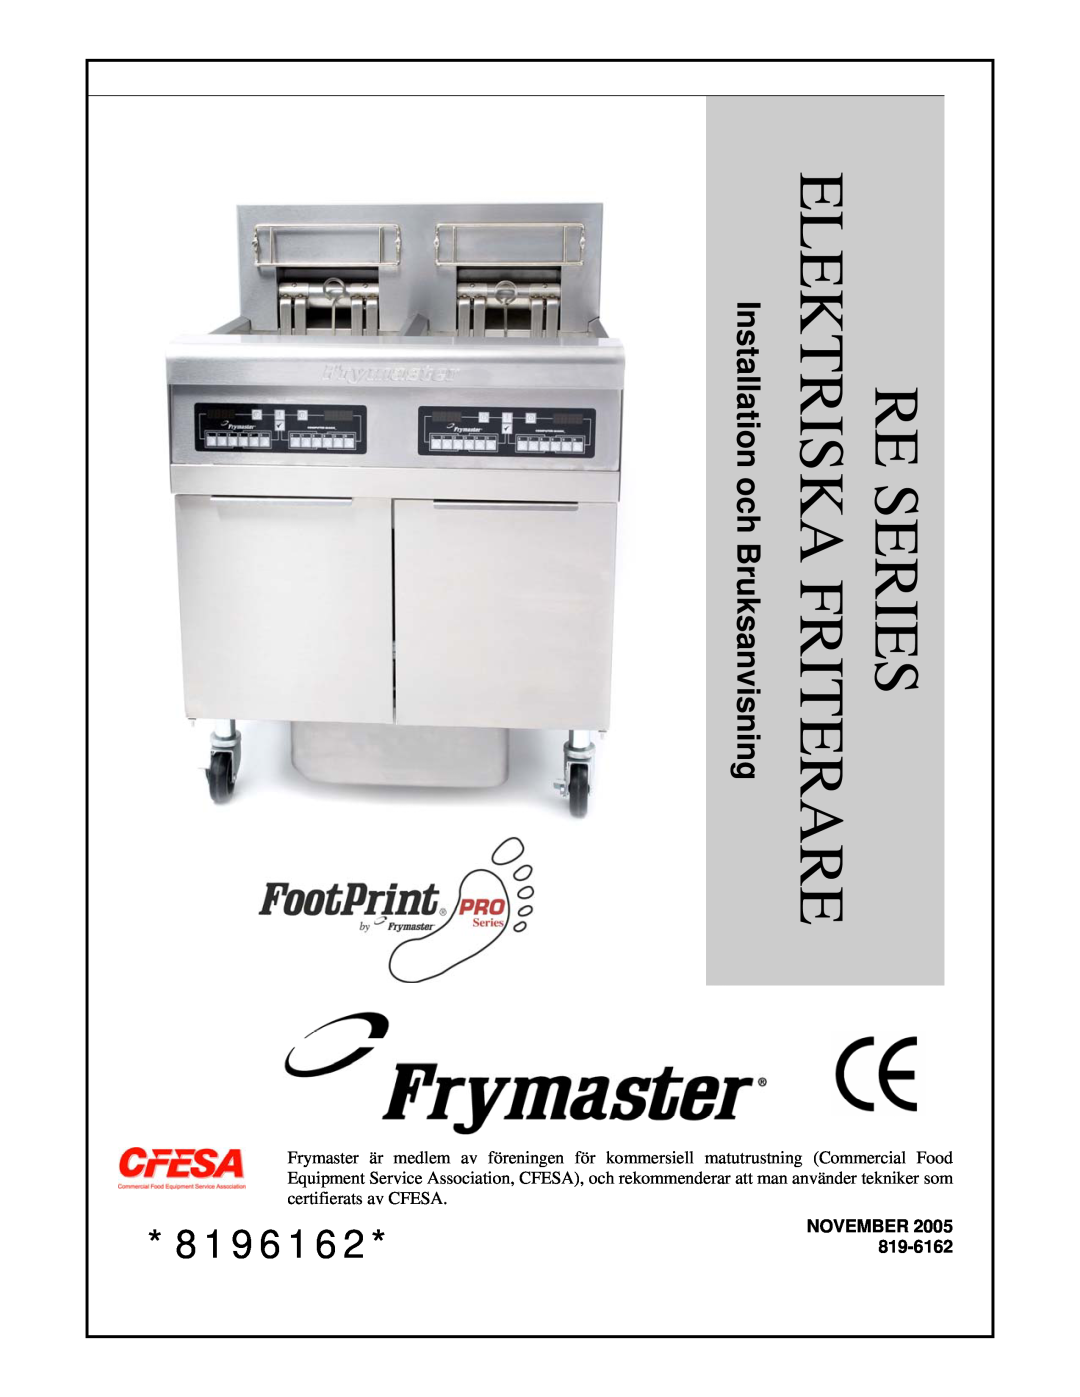 Frymaster RE Series manual Re Series Elektriska Friterare, 8196162*819-6162, Installation och Bruksanvisning, November 